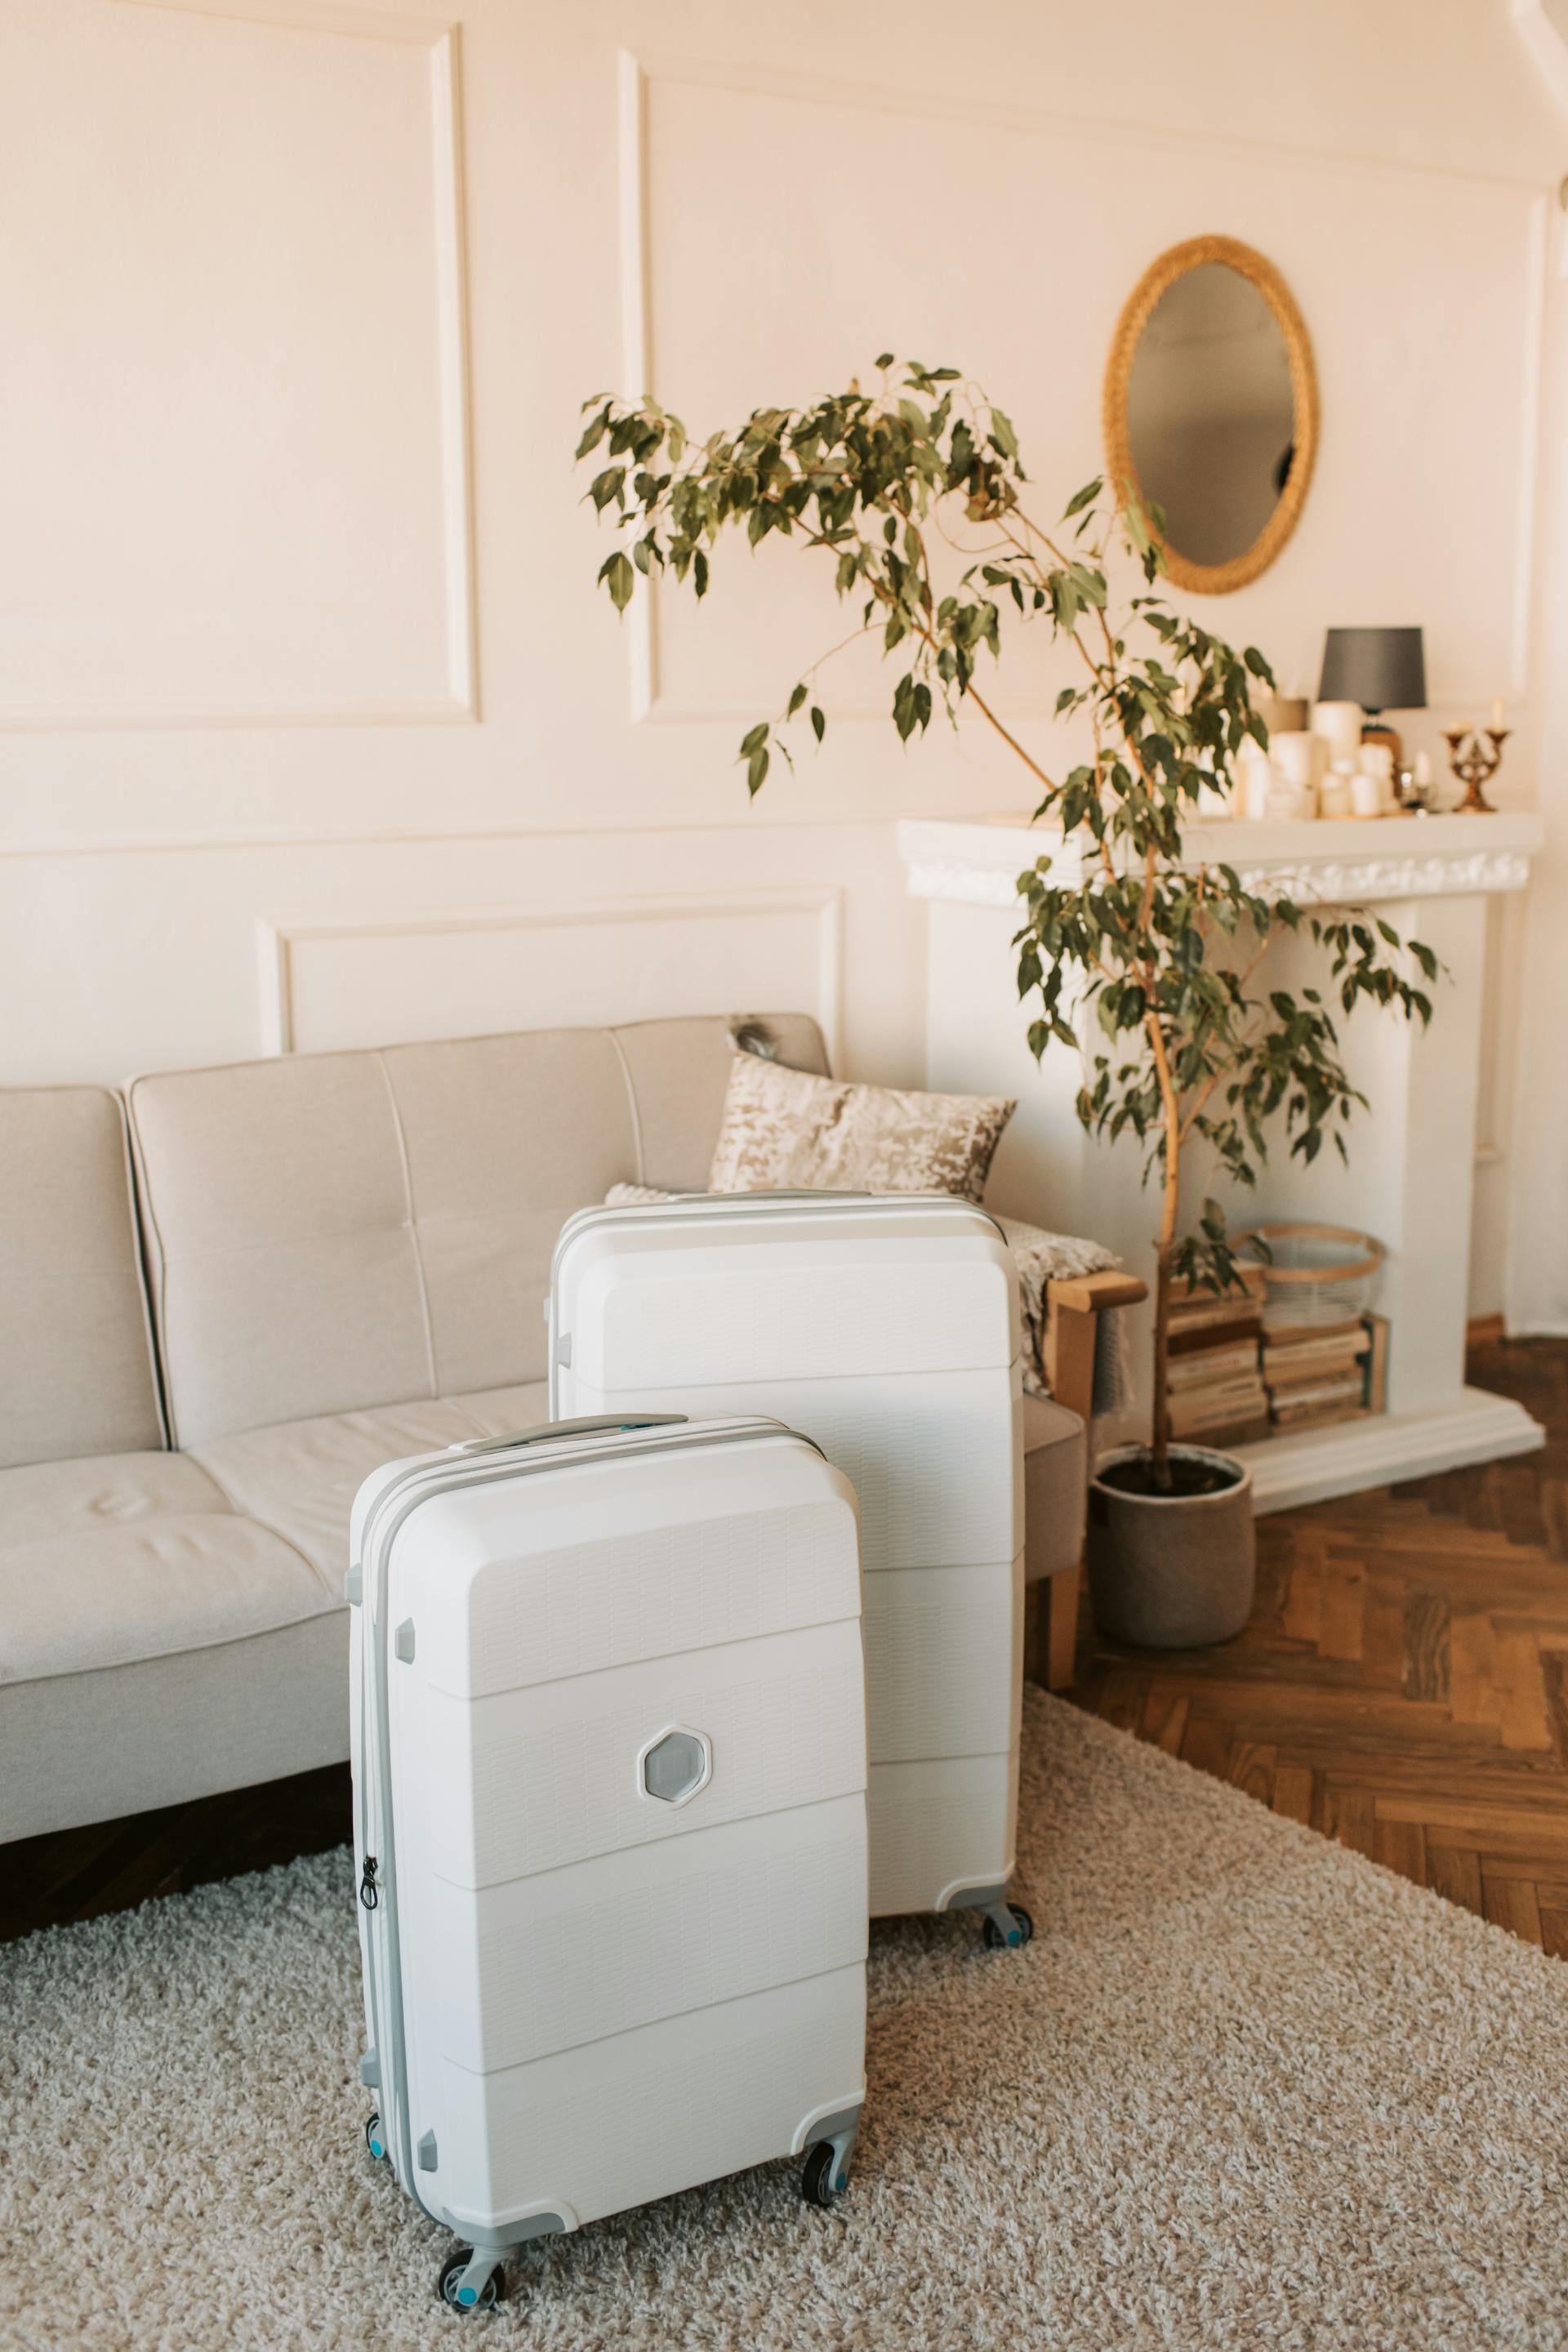 Des valises blanches dans un salon | Source : Pexels